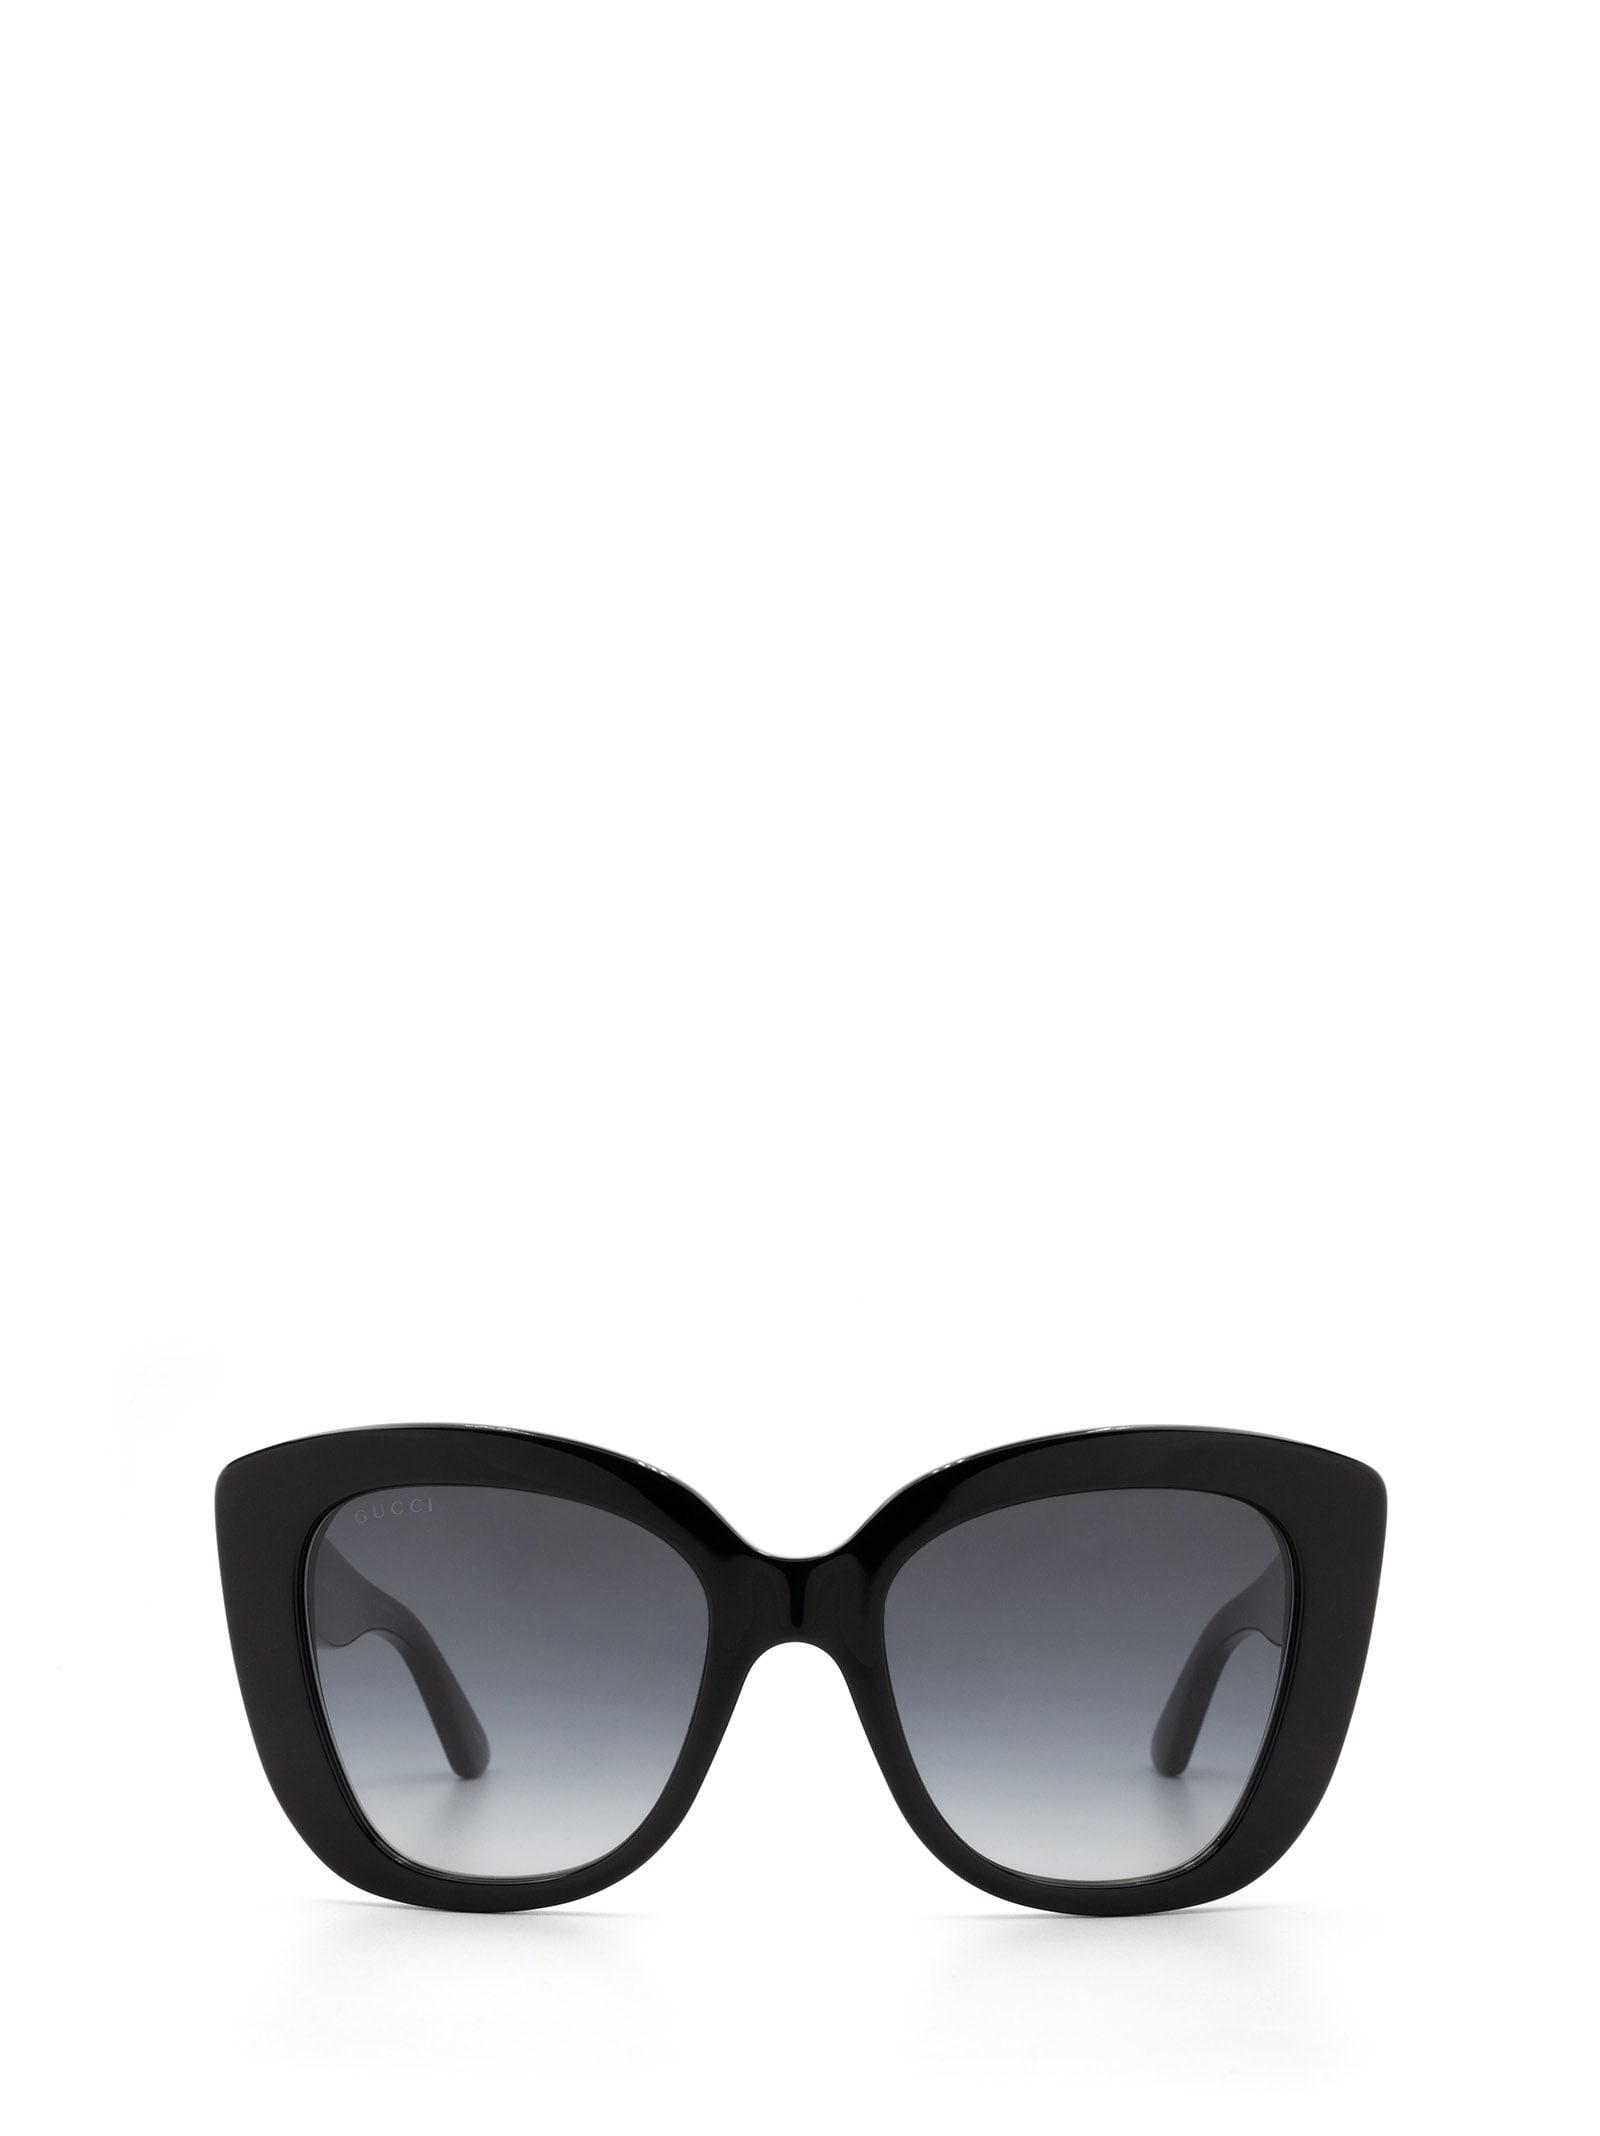 Gucci Acetate Sunglasses in Black | Lyst